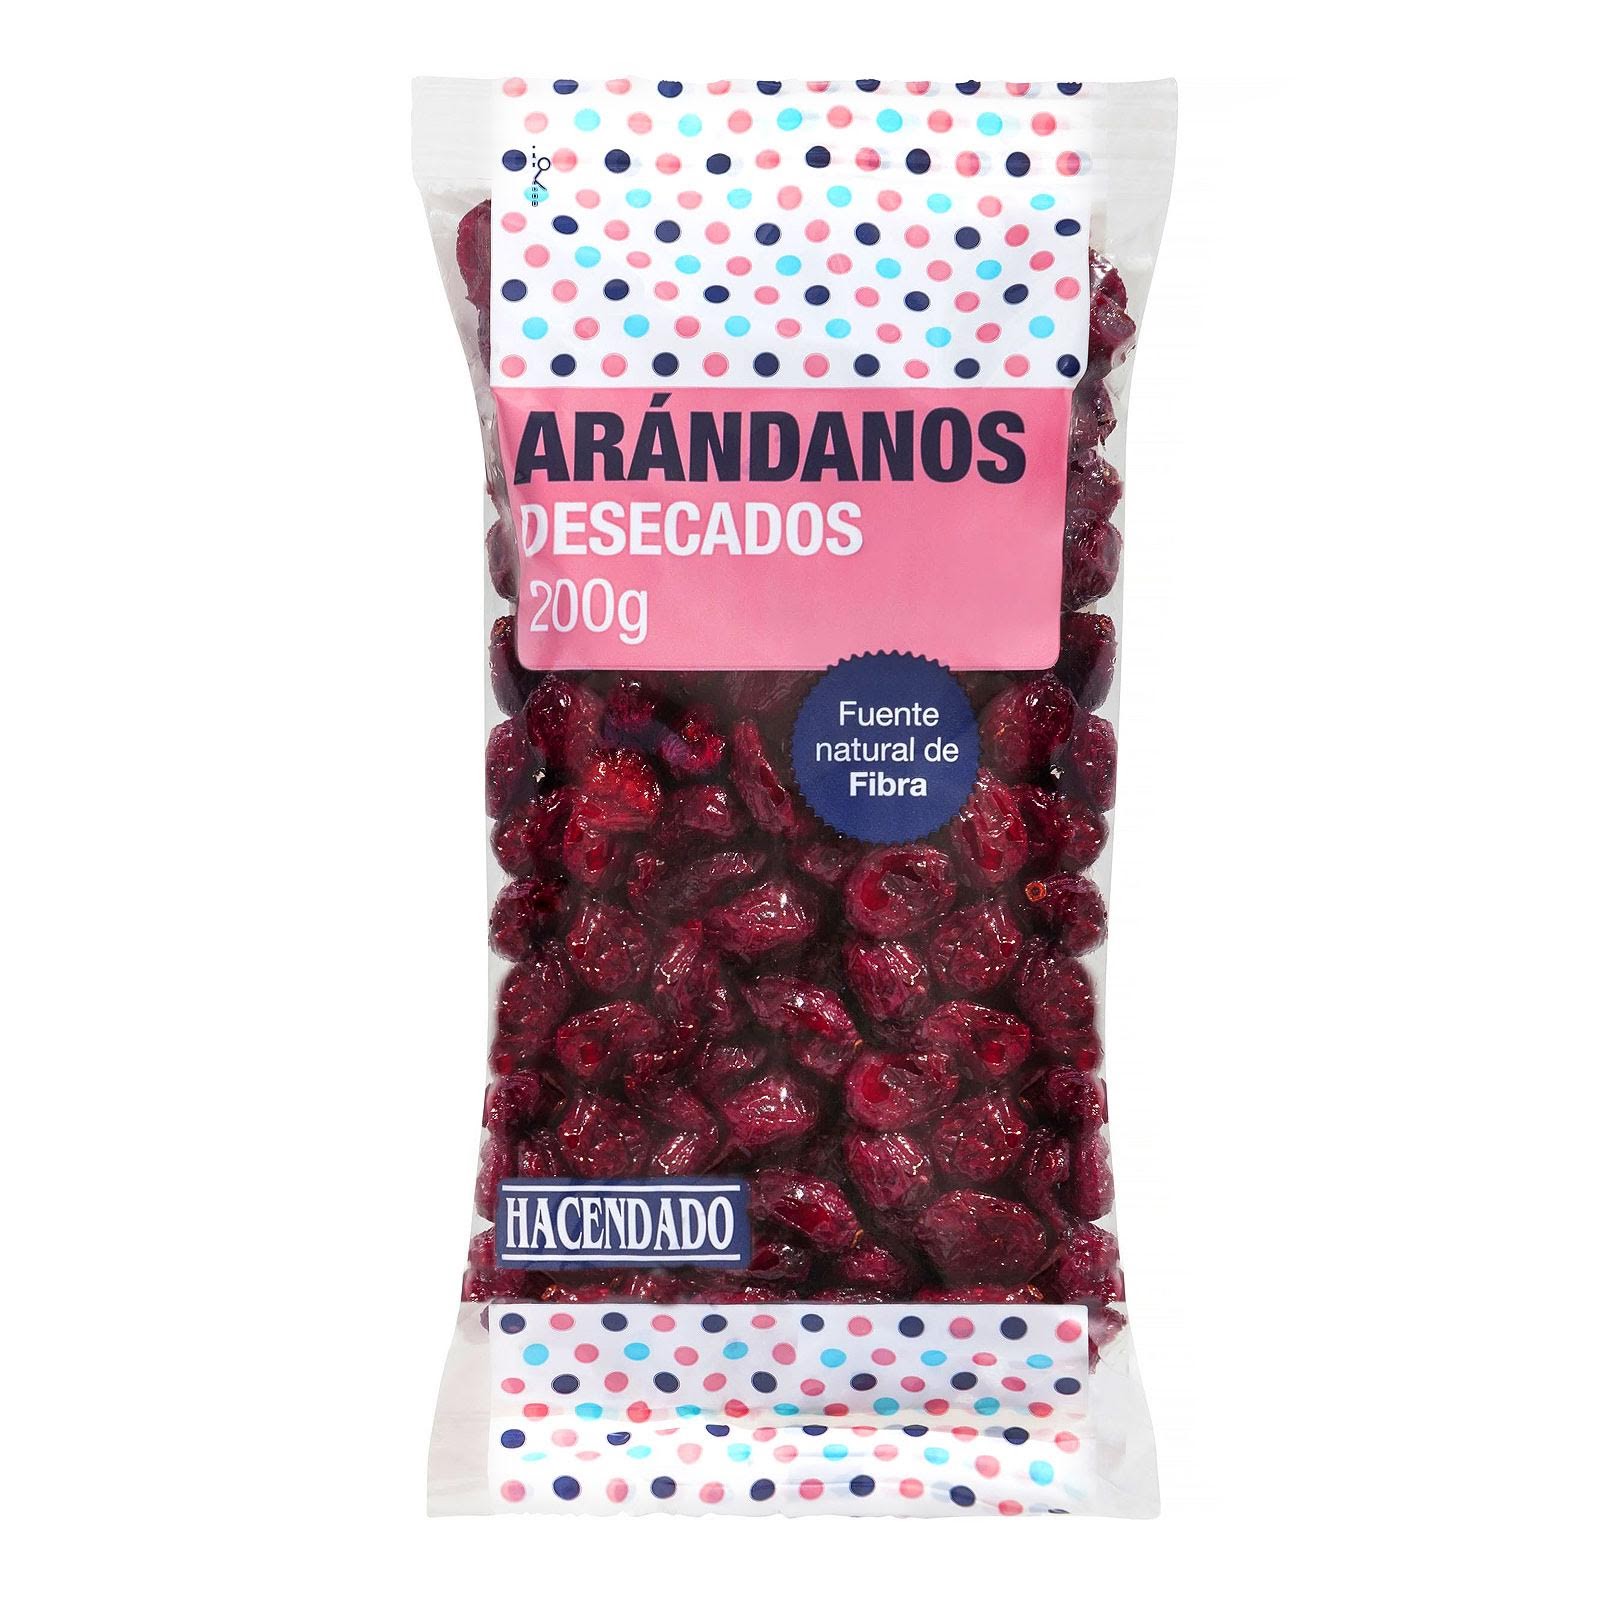 gedréchent Cranberries-Bauer-Mercadona-1